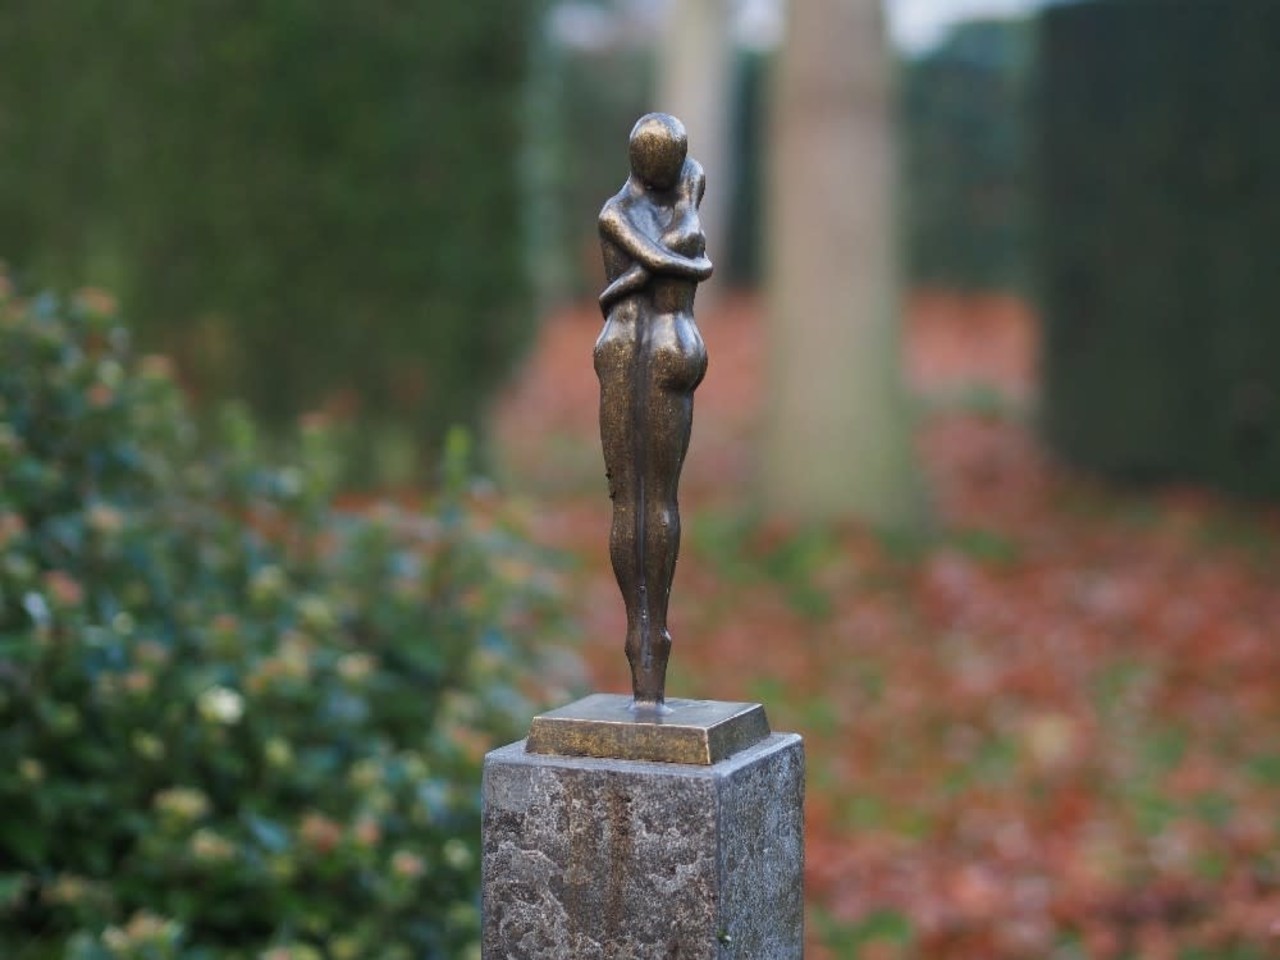 Hinder Bouwen beweging Bronzen beeld man vrouw liefdespaar | Hoogwaardig brons | Eliassen.nl -  Eliassen Home & Garden Pleasure